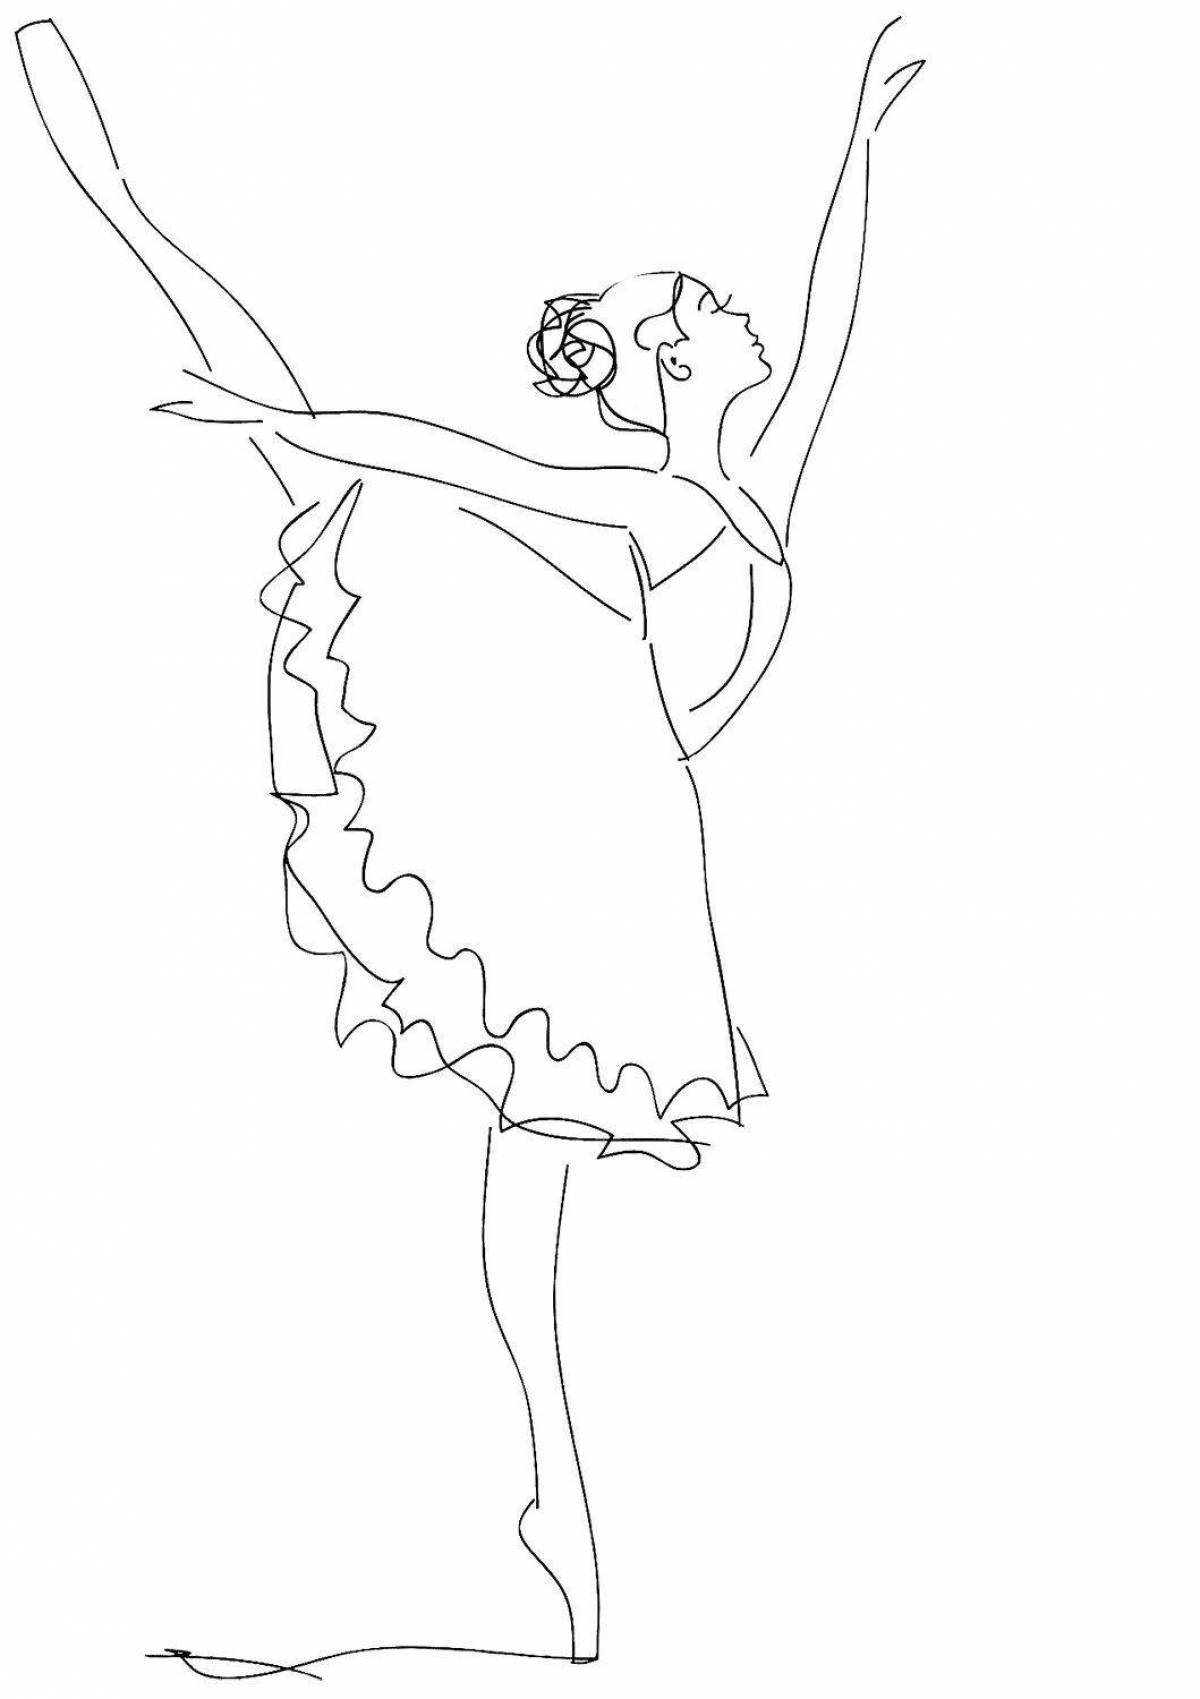 Увлекательный рисунок балерины